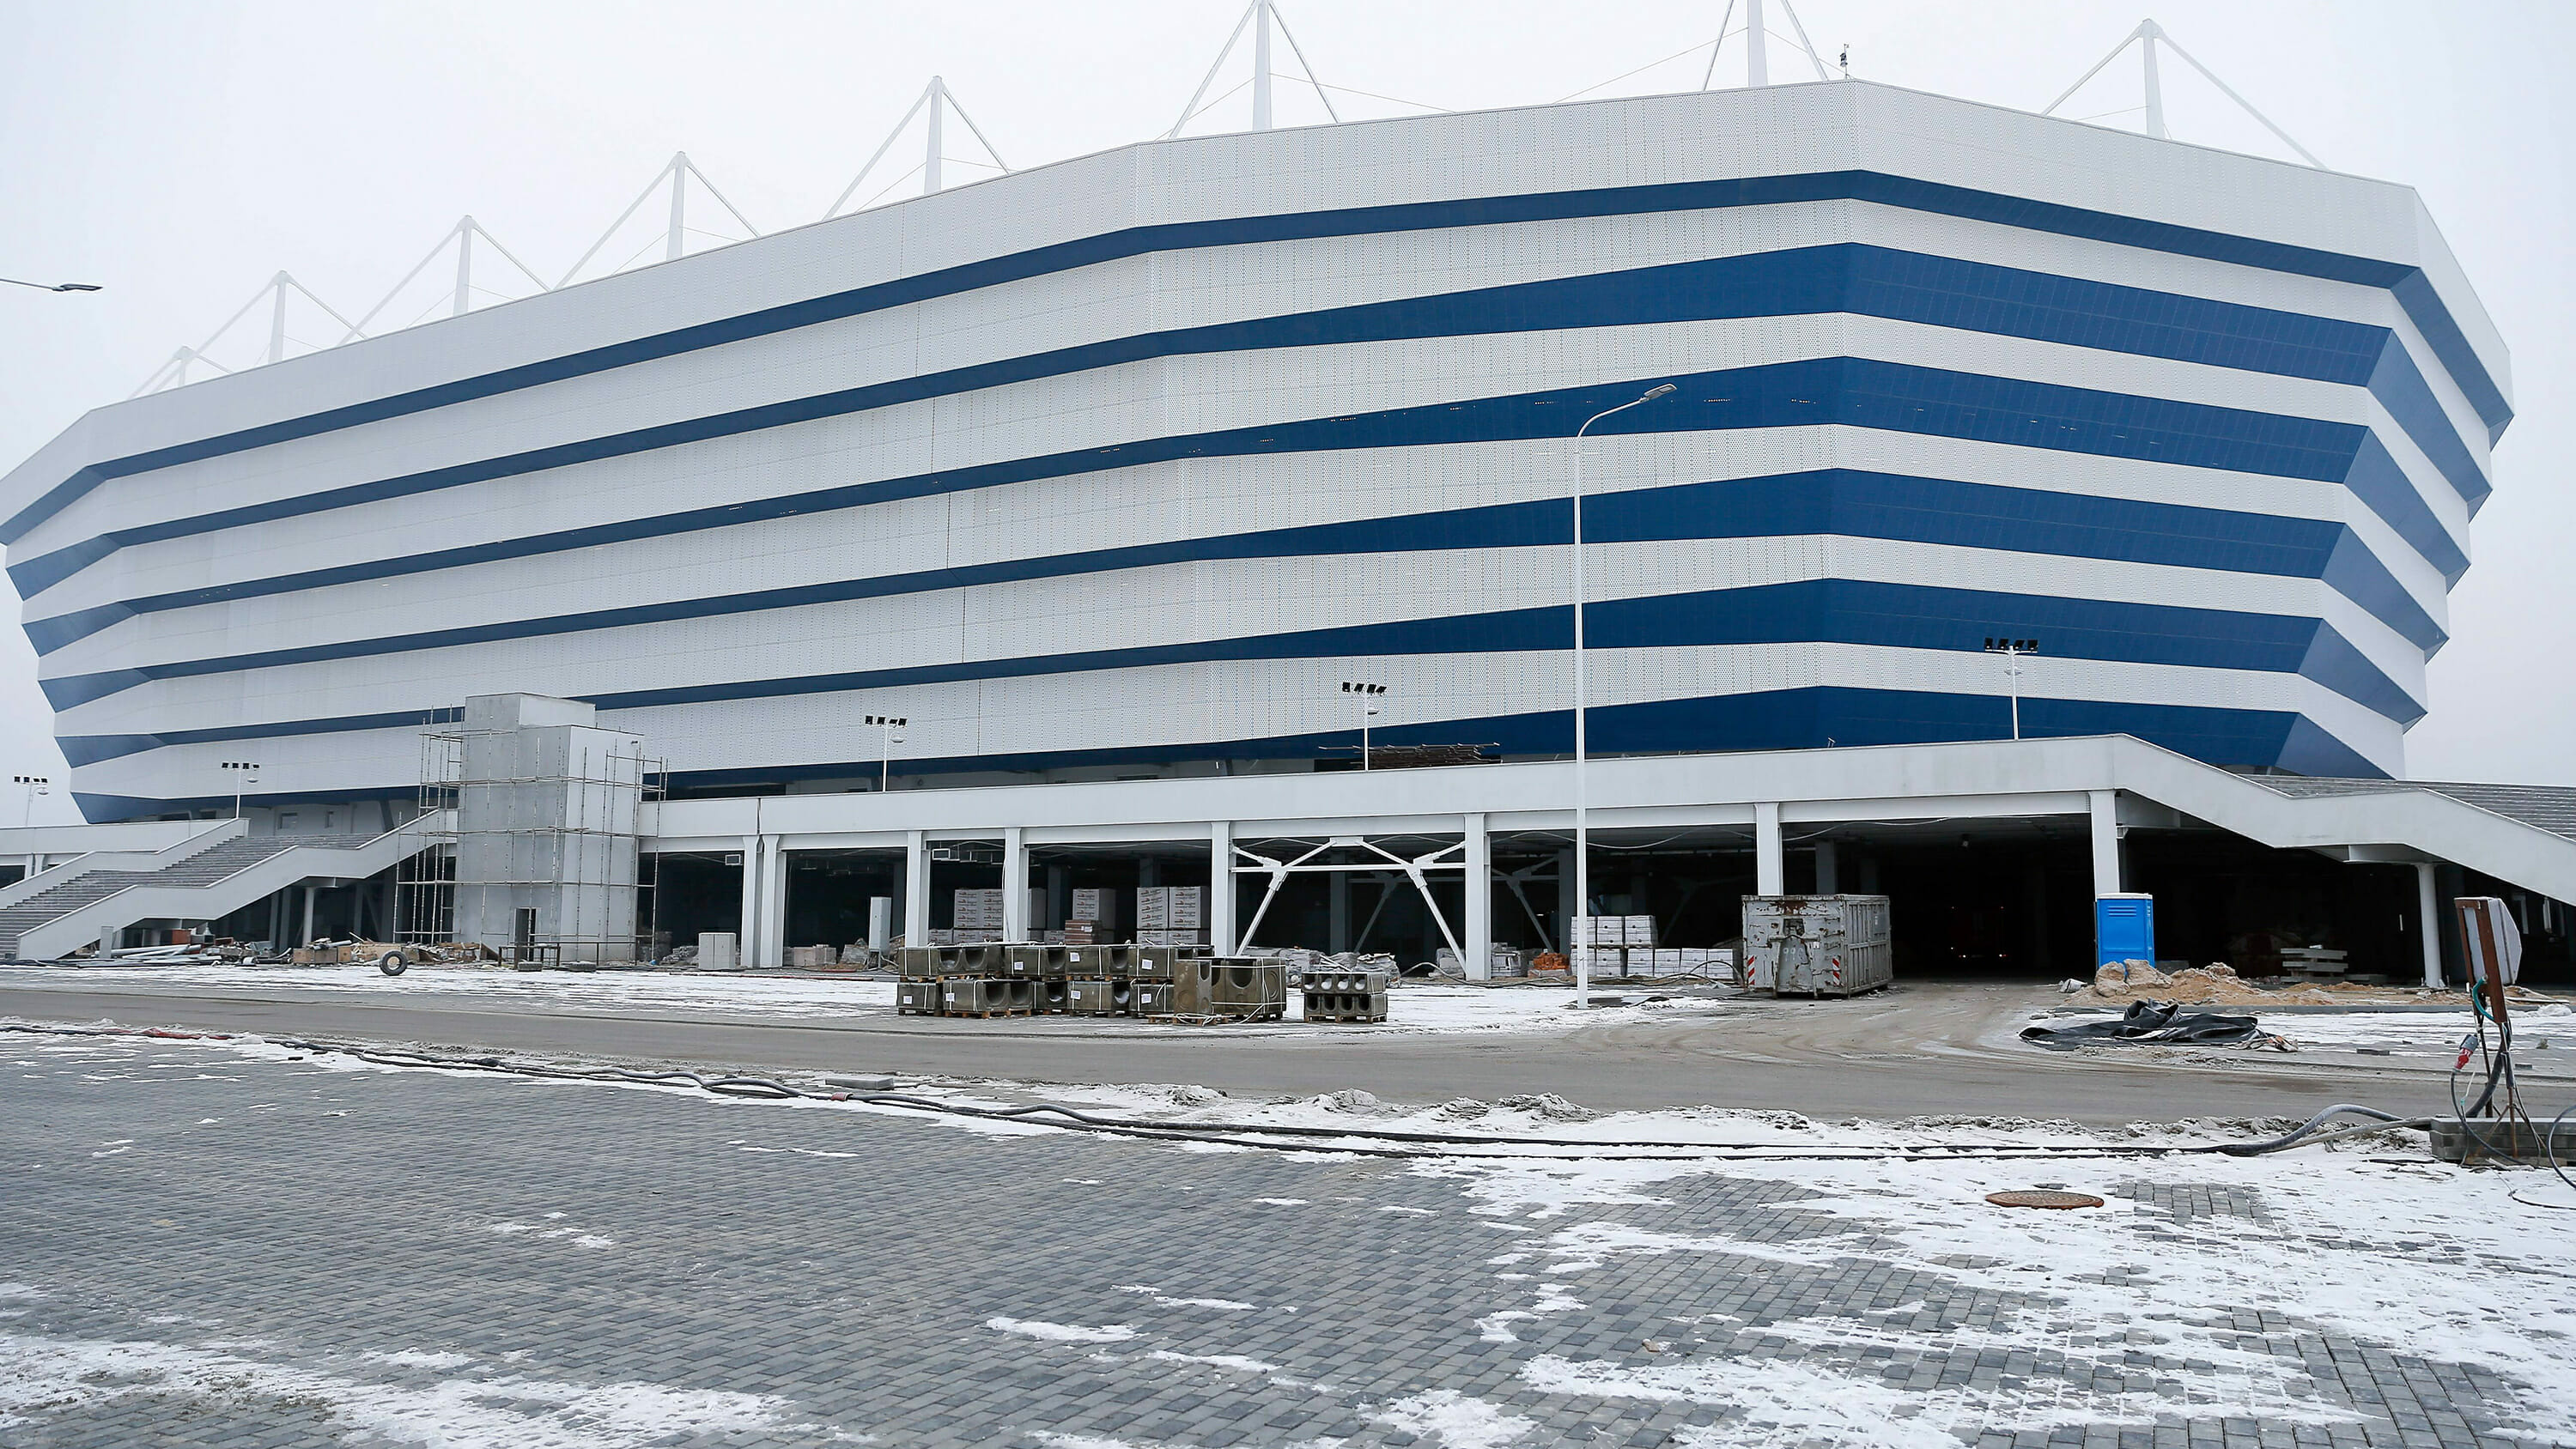 Stadion in Kaliningrad